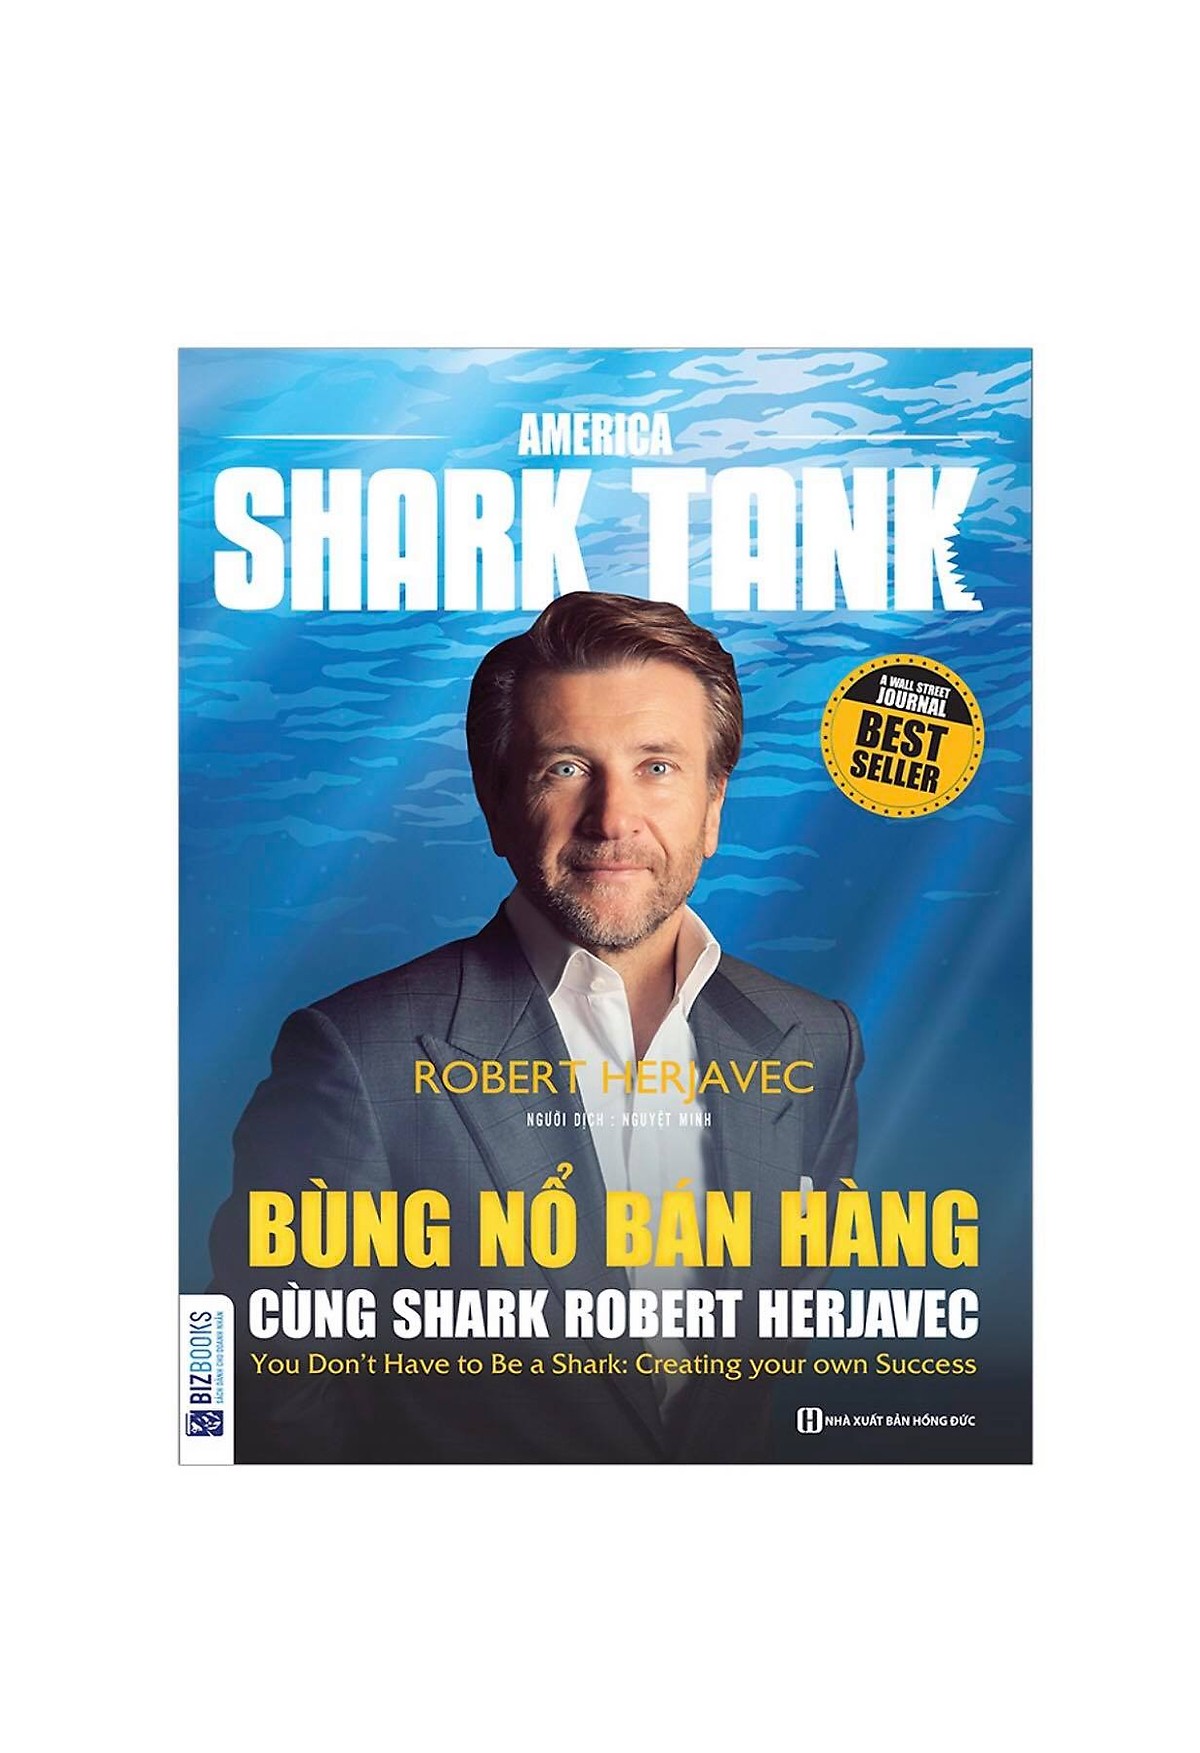 Combo Trọn Bộ 6 Cuốn America Shark Tank ( Bùng Nổ Bán Hàng Cùng Shark Robert Herjavec , Cách Biến 1.000 USD Thành Doanh Nghiệp Tỷ Đô Của Shark Barbara Corcoran , Cách Biến Ý Tưởng Triệu Đô Thành Hiện Thực Của Shark Lori Greiner , Rèn Luyện Ý Chí Chiến Thắng Cùng Shark Robert Herjavec , Thành Công Trong Kinh Doanh Và Cuộc Sống Cùng Shark Robert Herjavec , Bí Quyết Kinh Doanh Của Shark Mark Cuban Tặng kèm Cuốn ngôn ngữ cơ thể